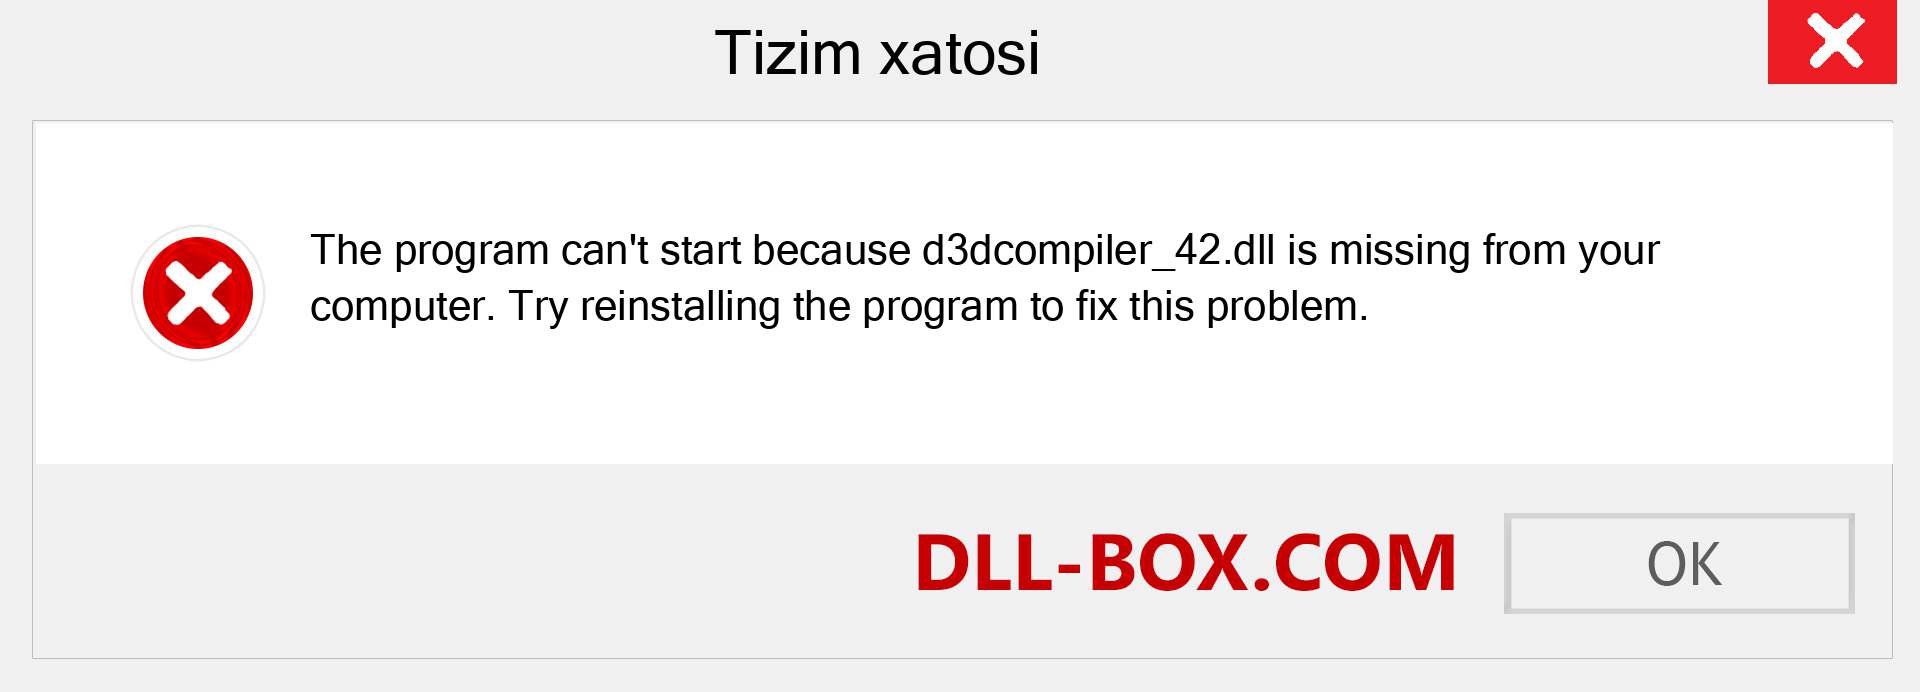 d3dcompiler_42.dll fayli yo'qolganmi?. Windows 7, 8, 10 uchun yuklab olish - Windowsda d3dcompiler_42 dll etishmayotgan xatoni tuzating, rasmlar, rasmlar